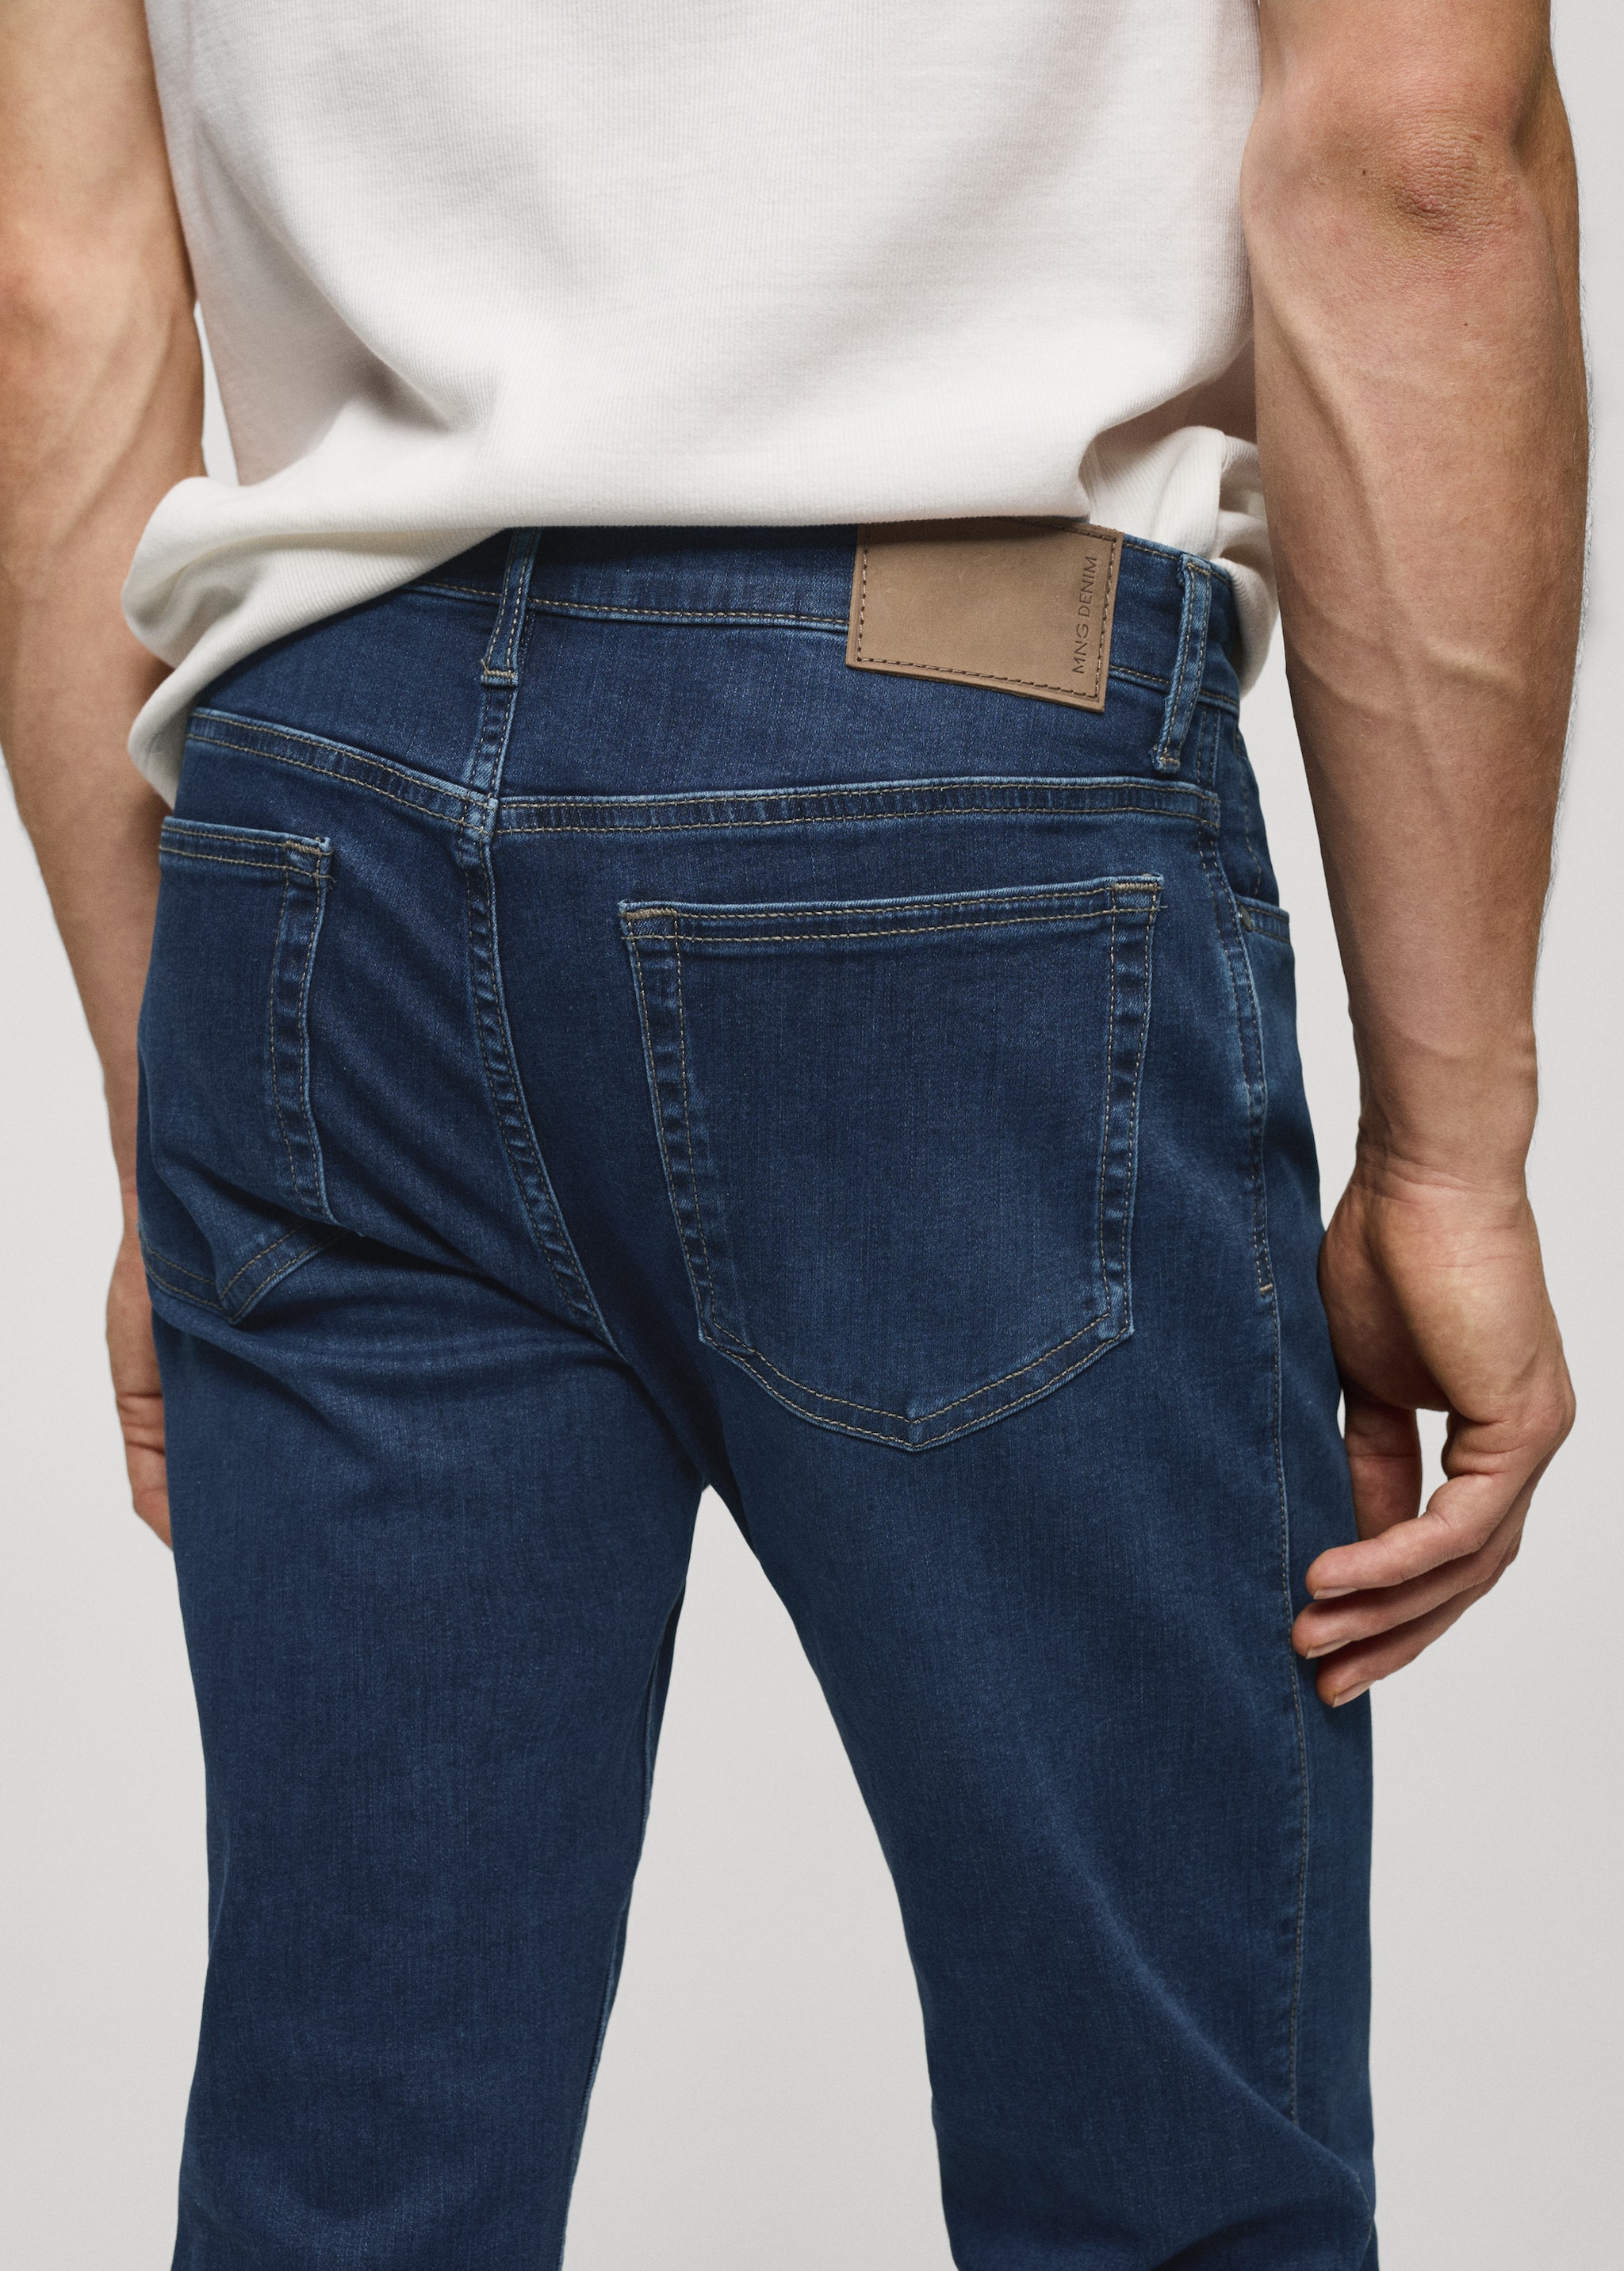 Jeans Patrick slim fit Ultra Soft Touch - Pormenor do artigo 4